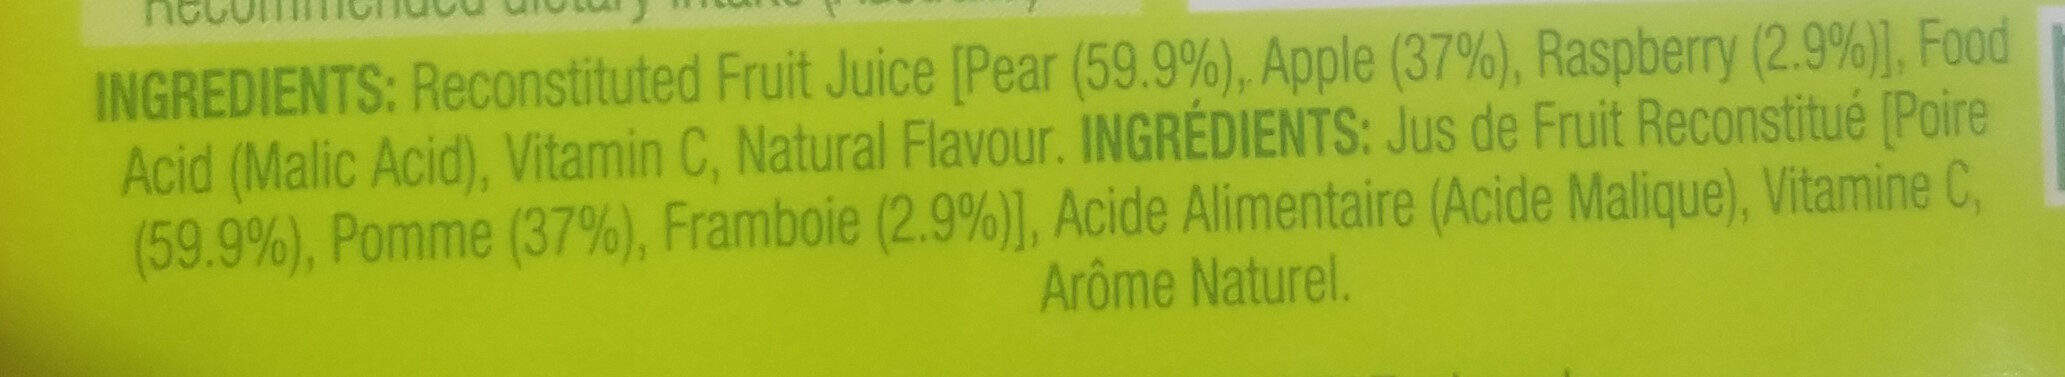 Pear Apple & Raspberry - Ingredients